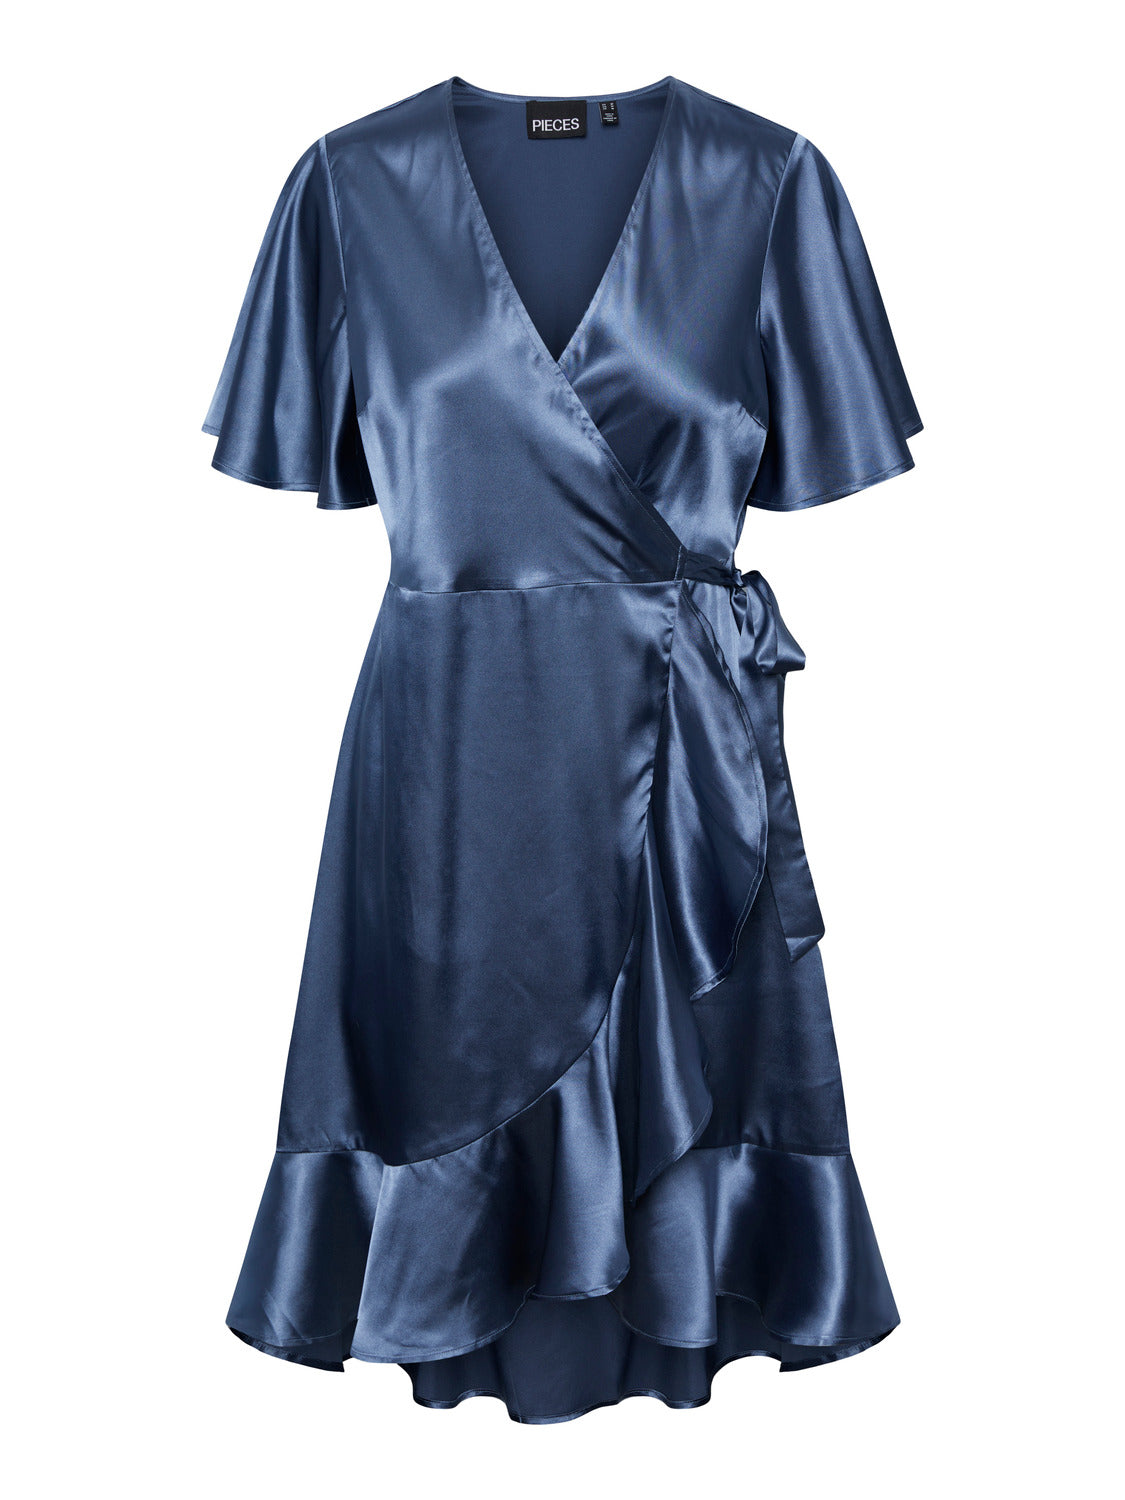 PCTAIA Dress - Vintage Indigo